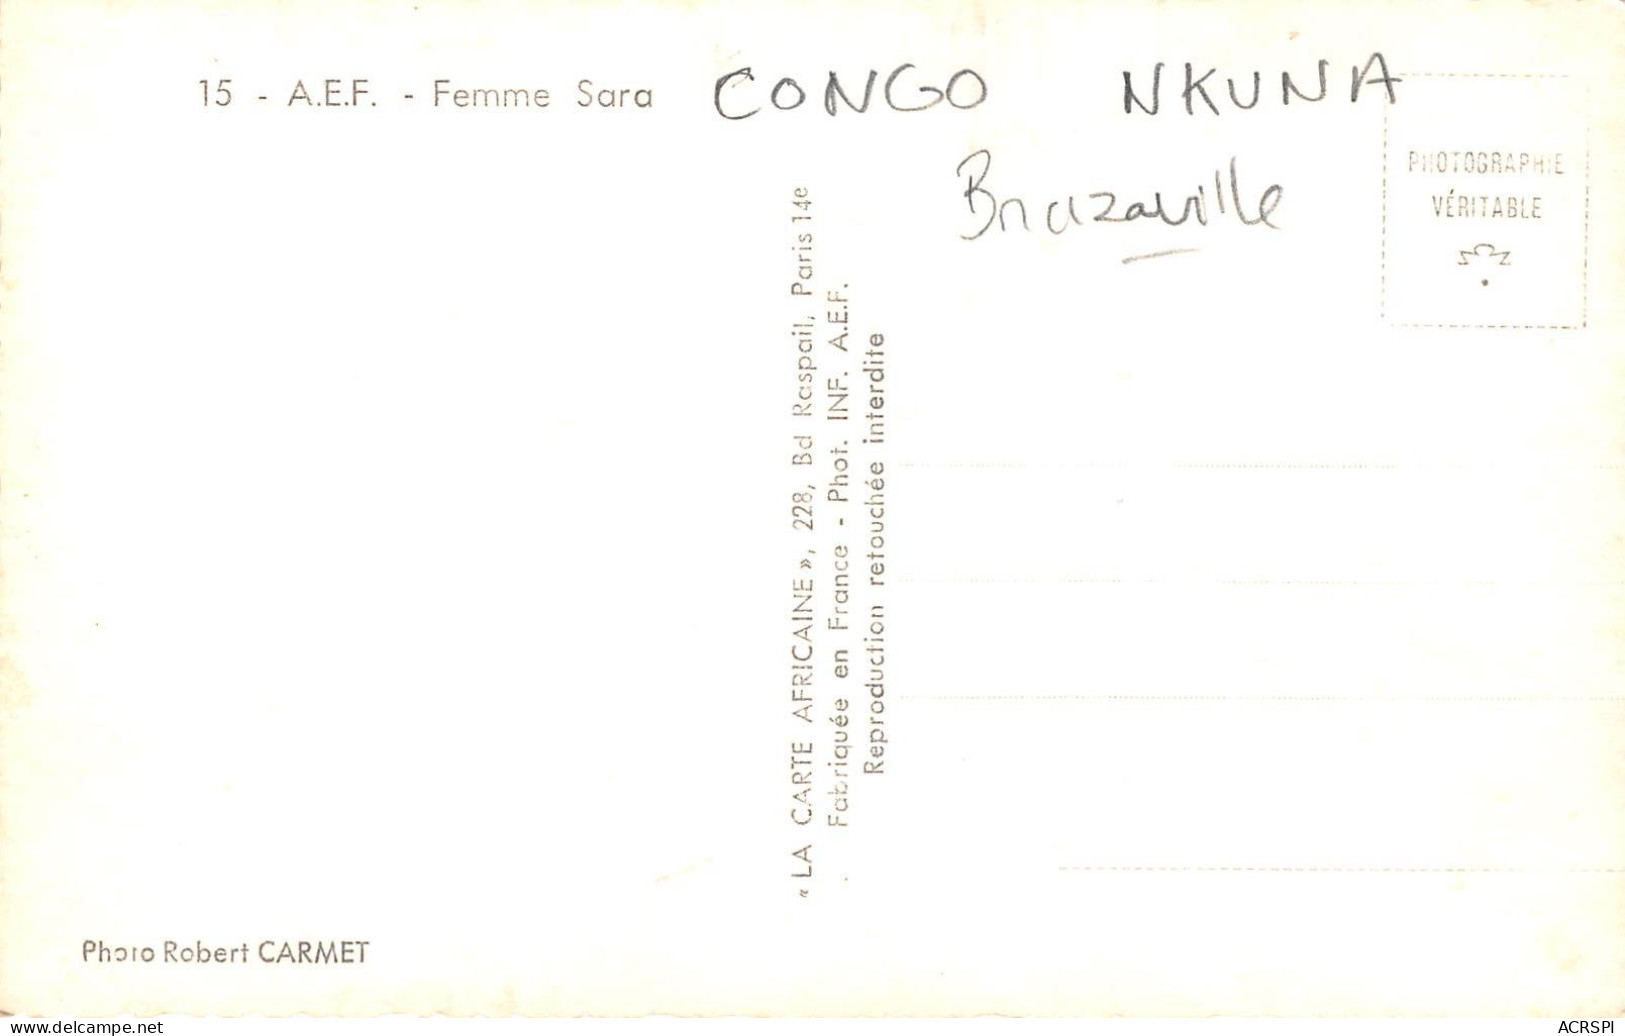 CONGO FRANCAIS  Brazzaville Nkuna Femme SARA AEF Carte Vierge  (scan Recto-verso) OO 0970 - Congo Français